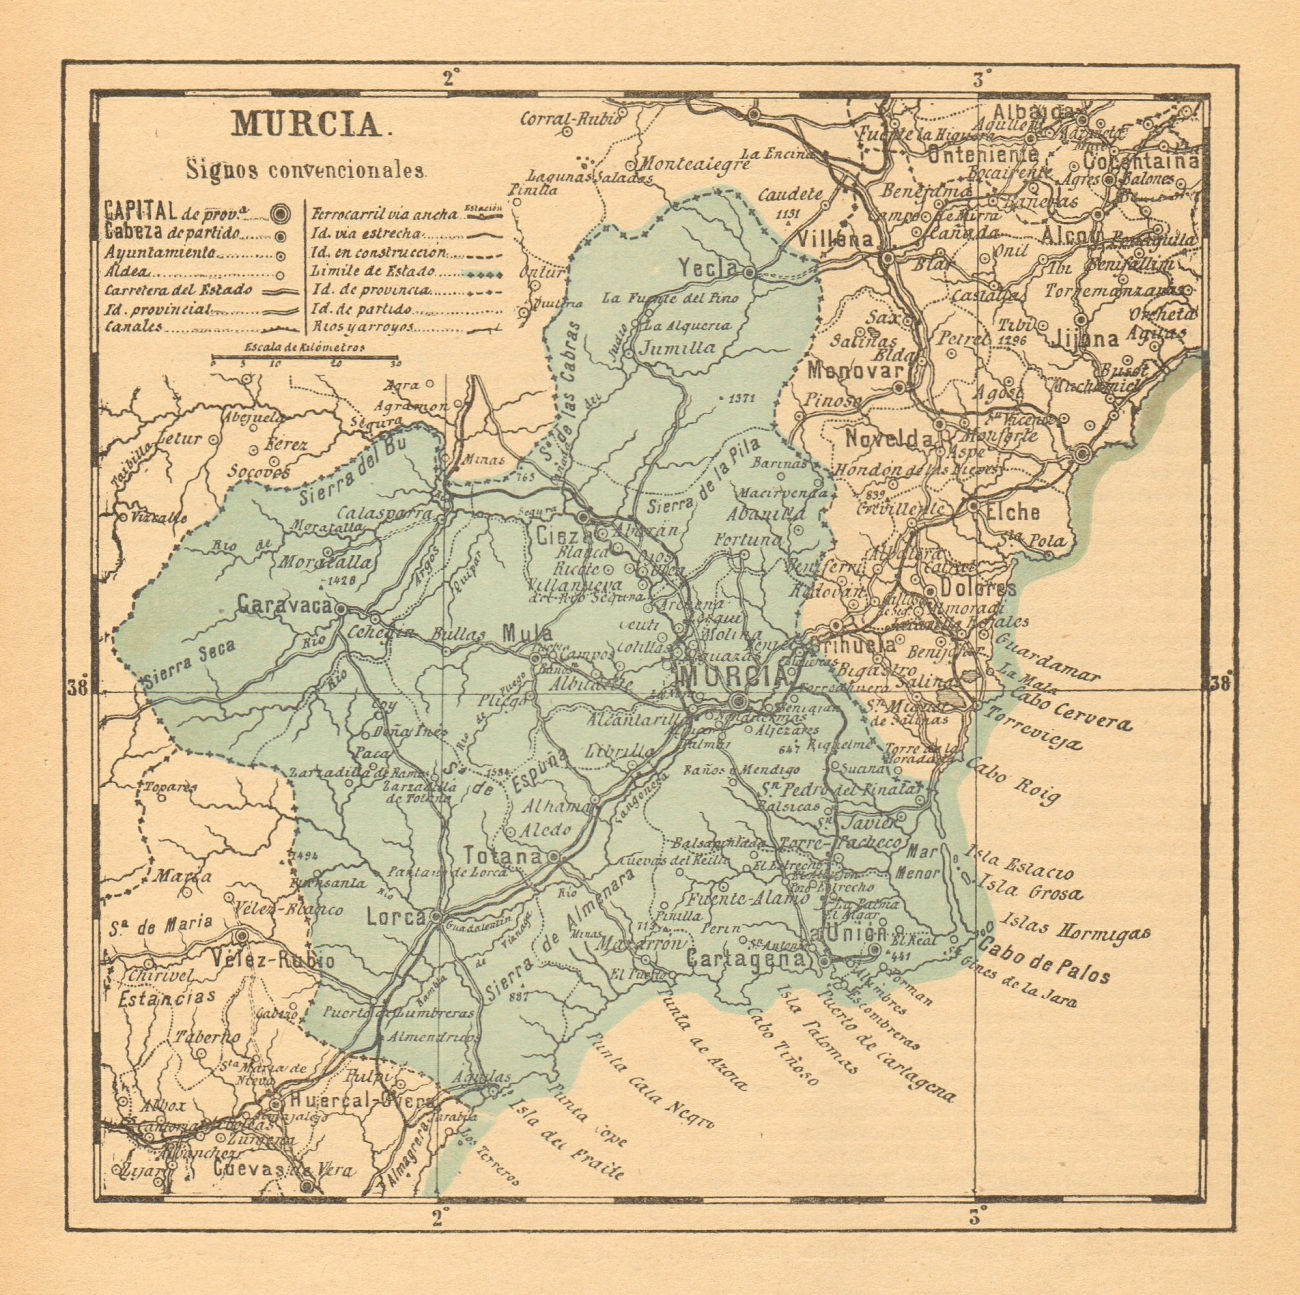 Associate Product MURCIA. Region of Murcia. Mapa antiguo de la provincia 1914 old antique